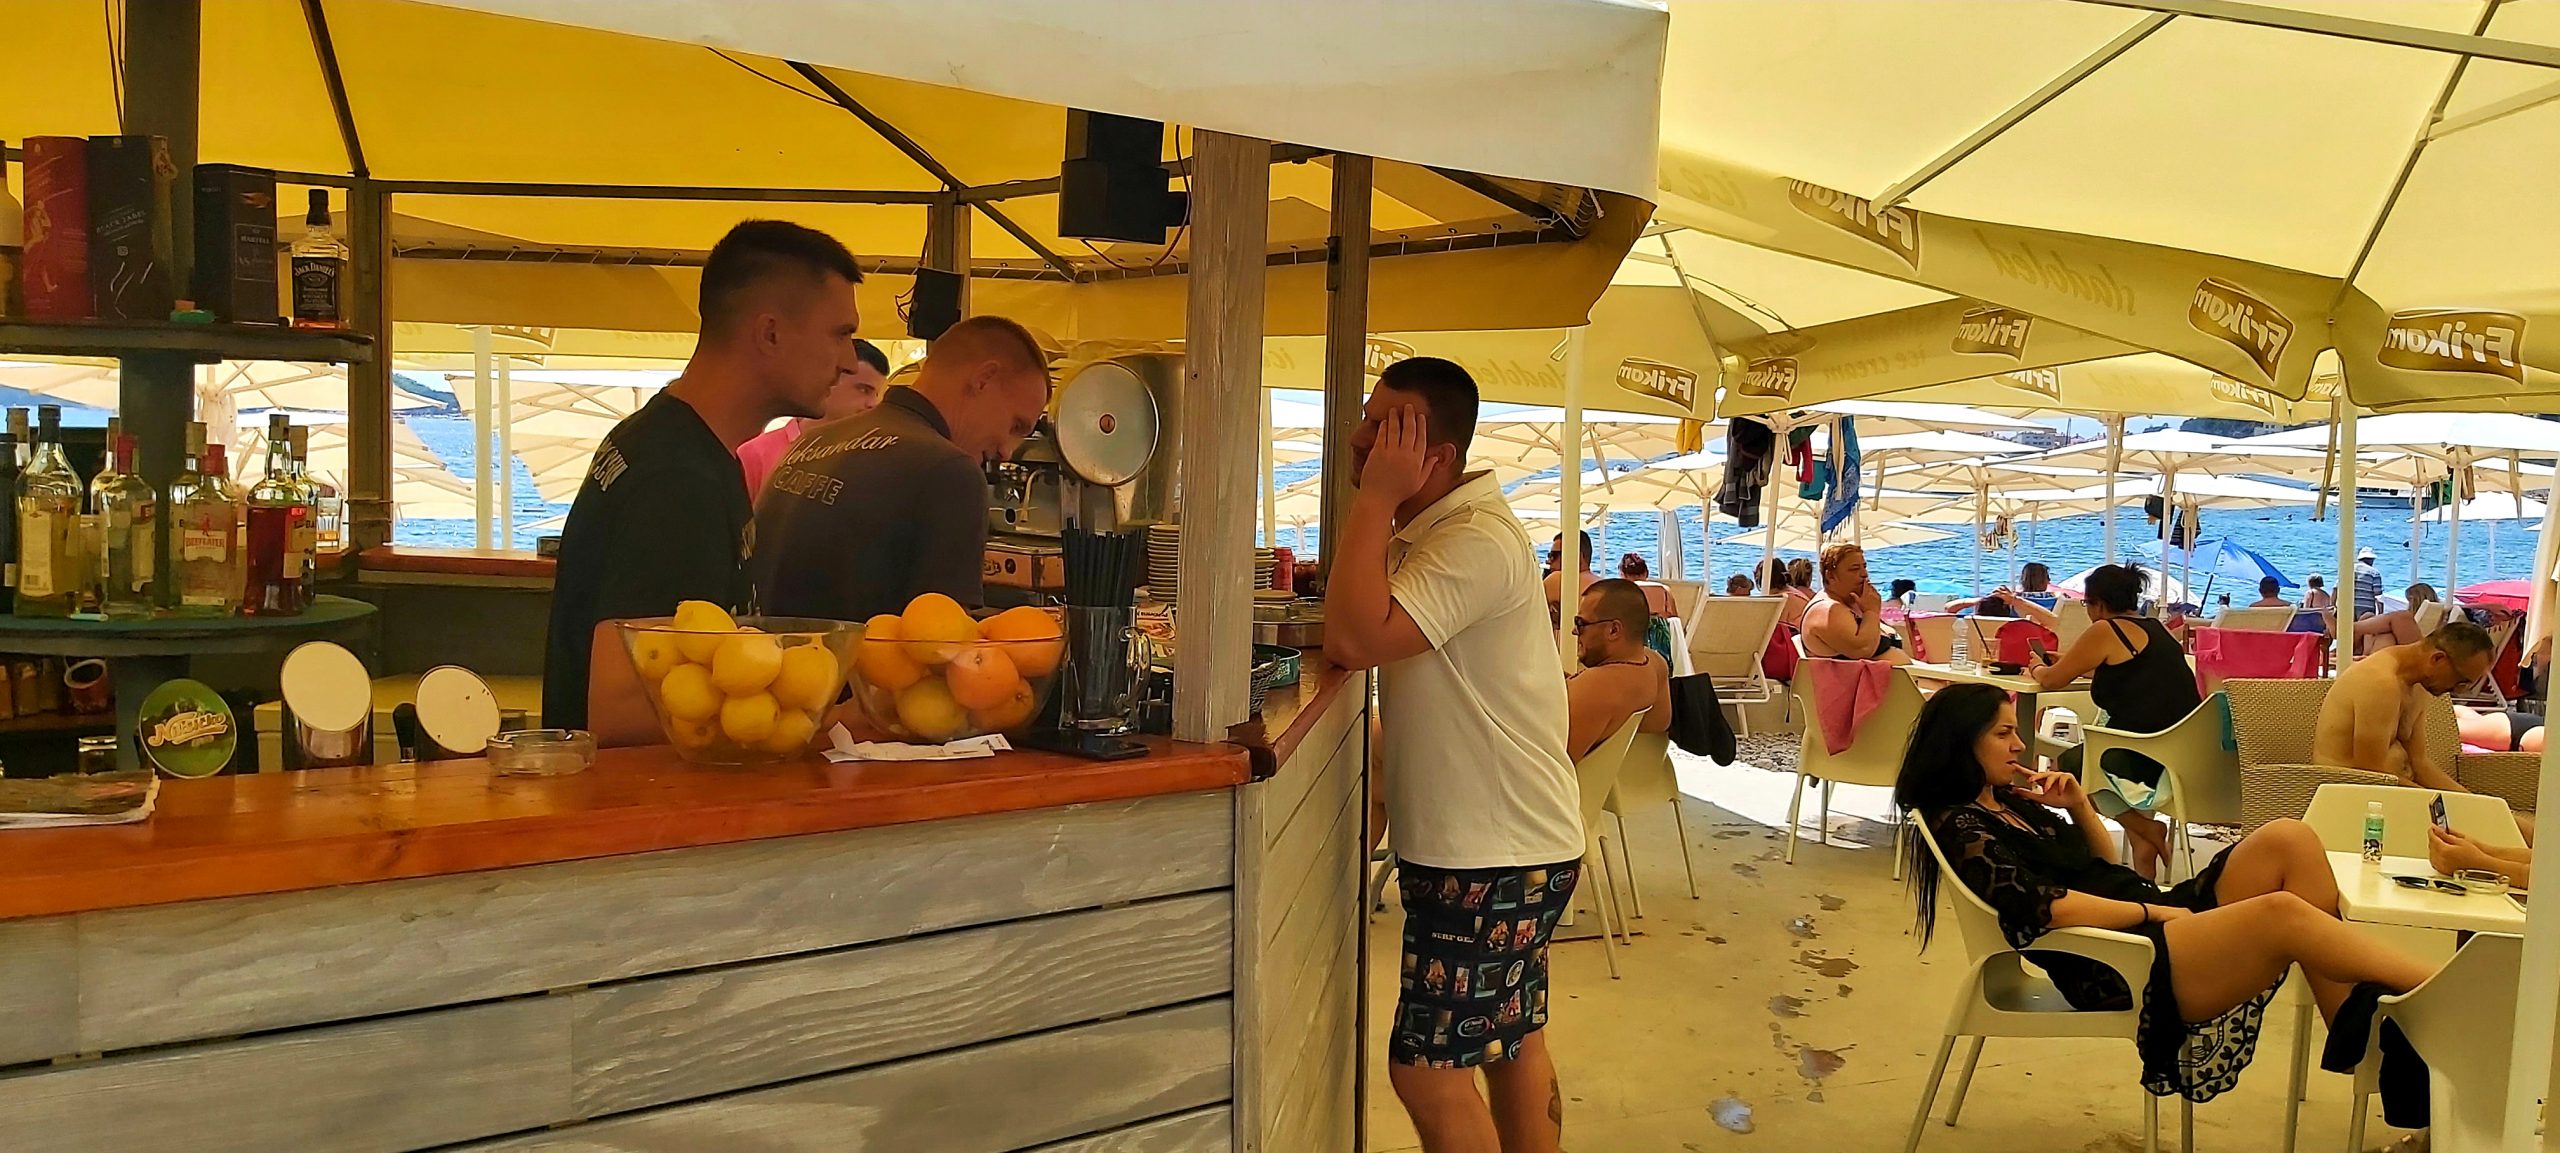 Crna Gora plaze turizam